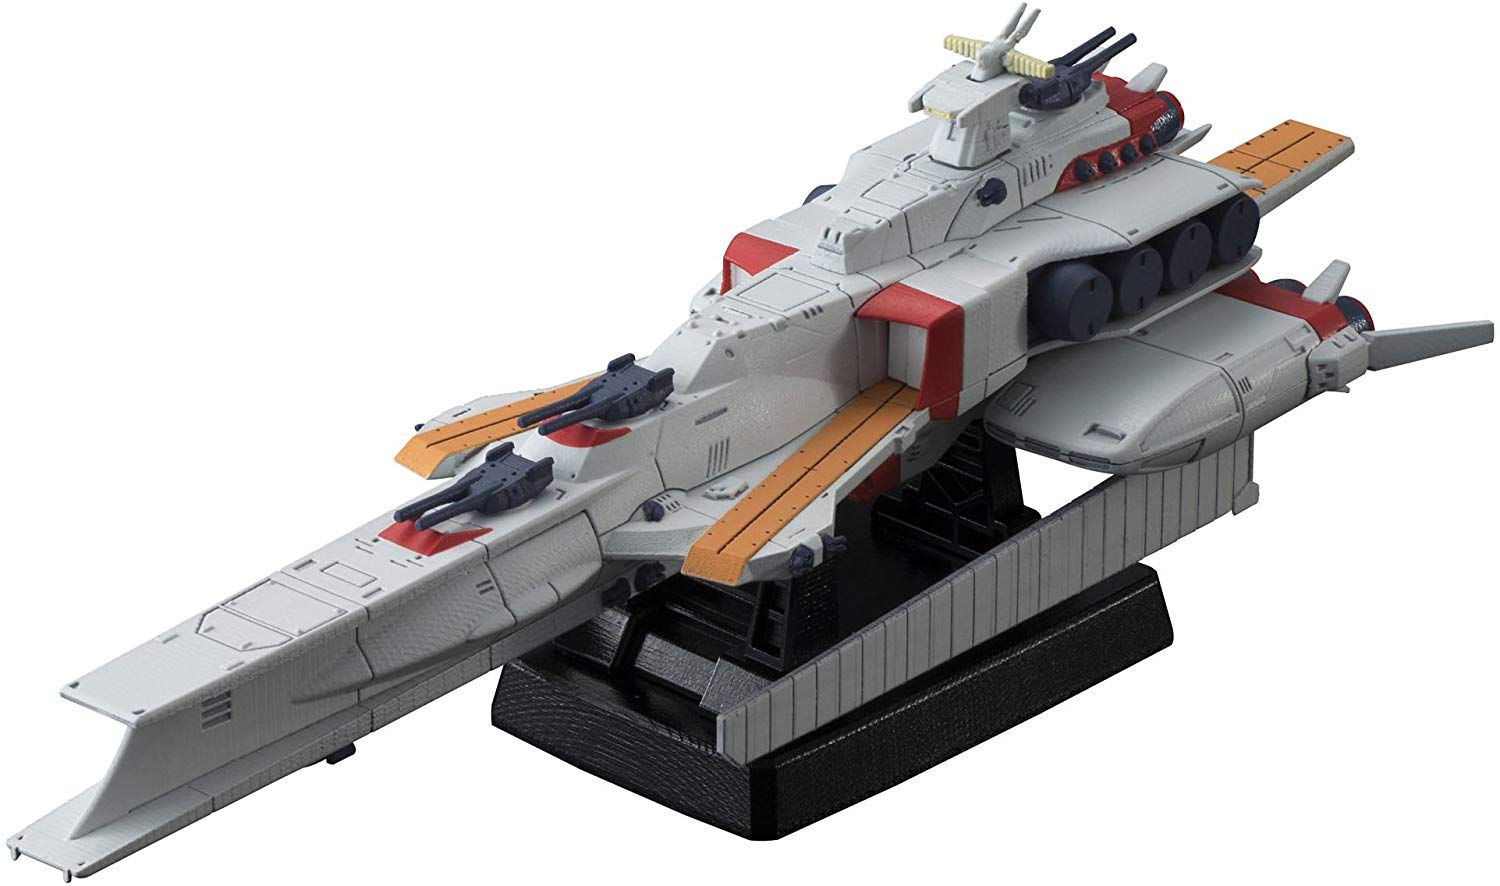 プラモ化 再プラモ化して欲しい艦船モデルは Gundam Log ガンダムまとめブログ